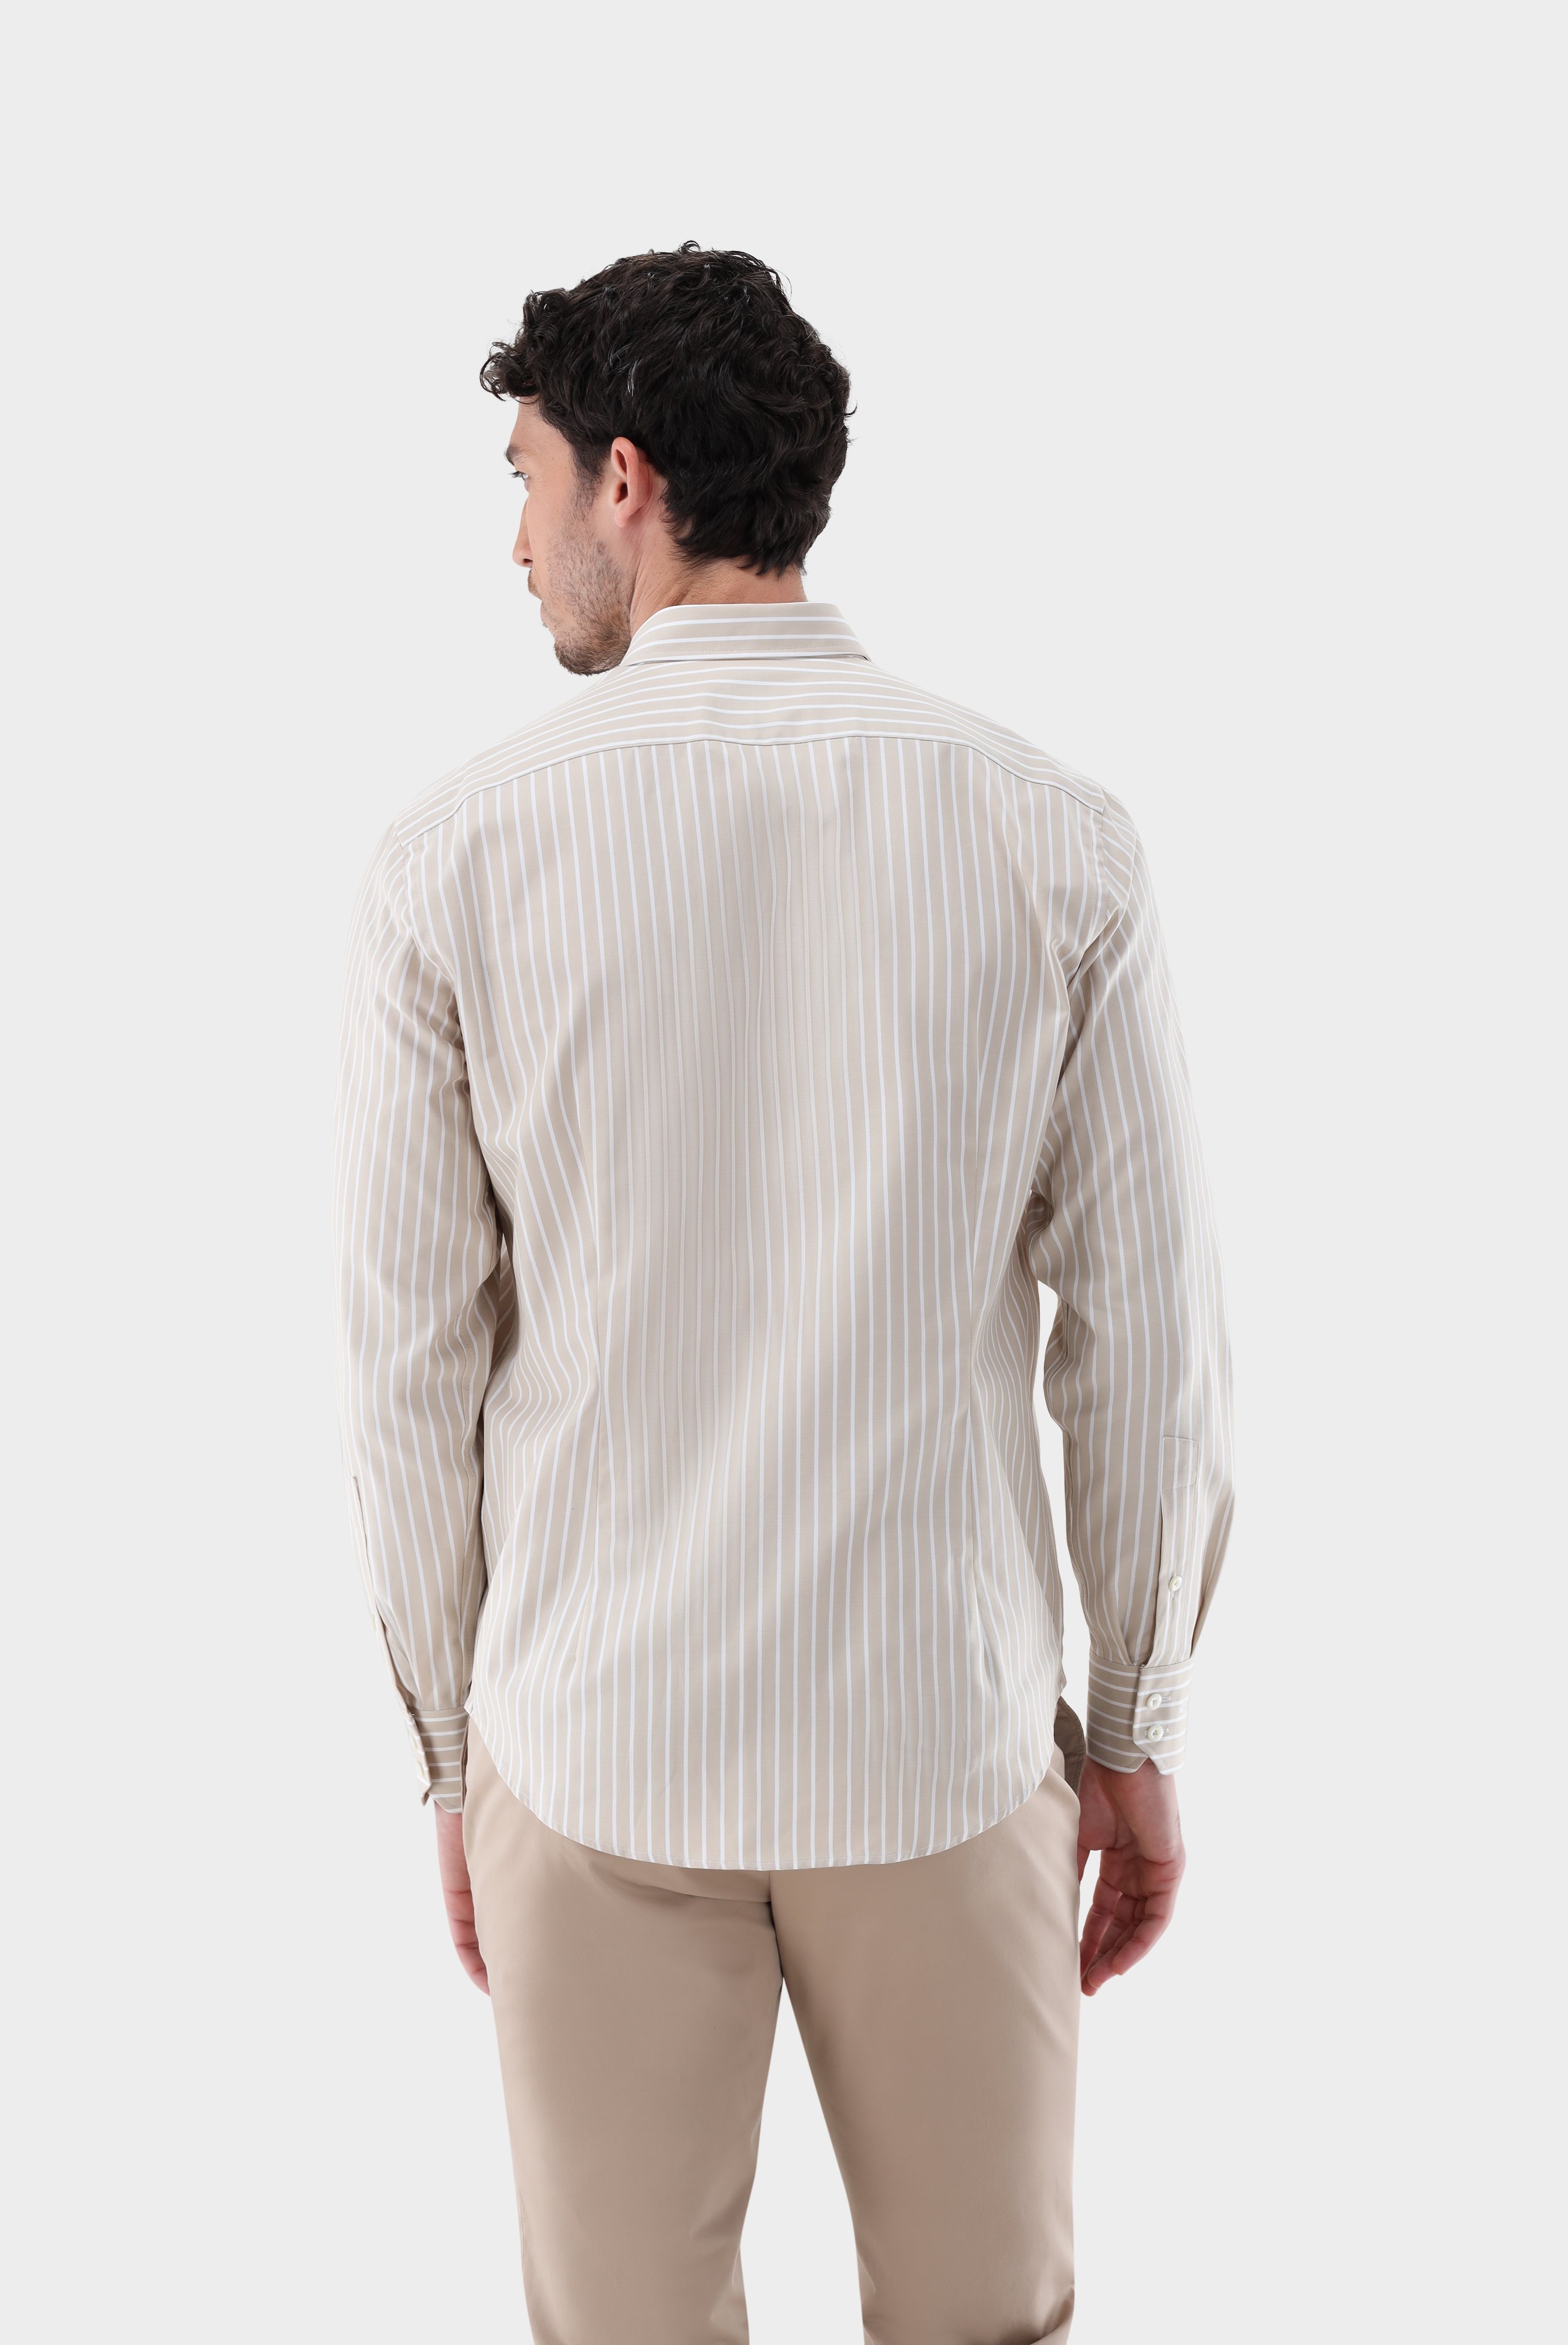 Casual Hemden+Gestreiftes Oxford Hemd Tailor Fit+20.2013.AV.151956.120.38